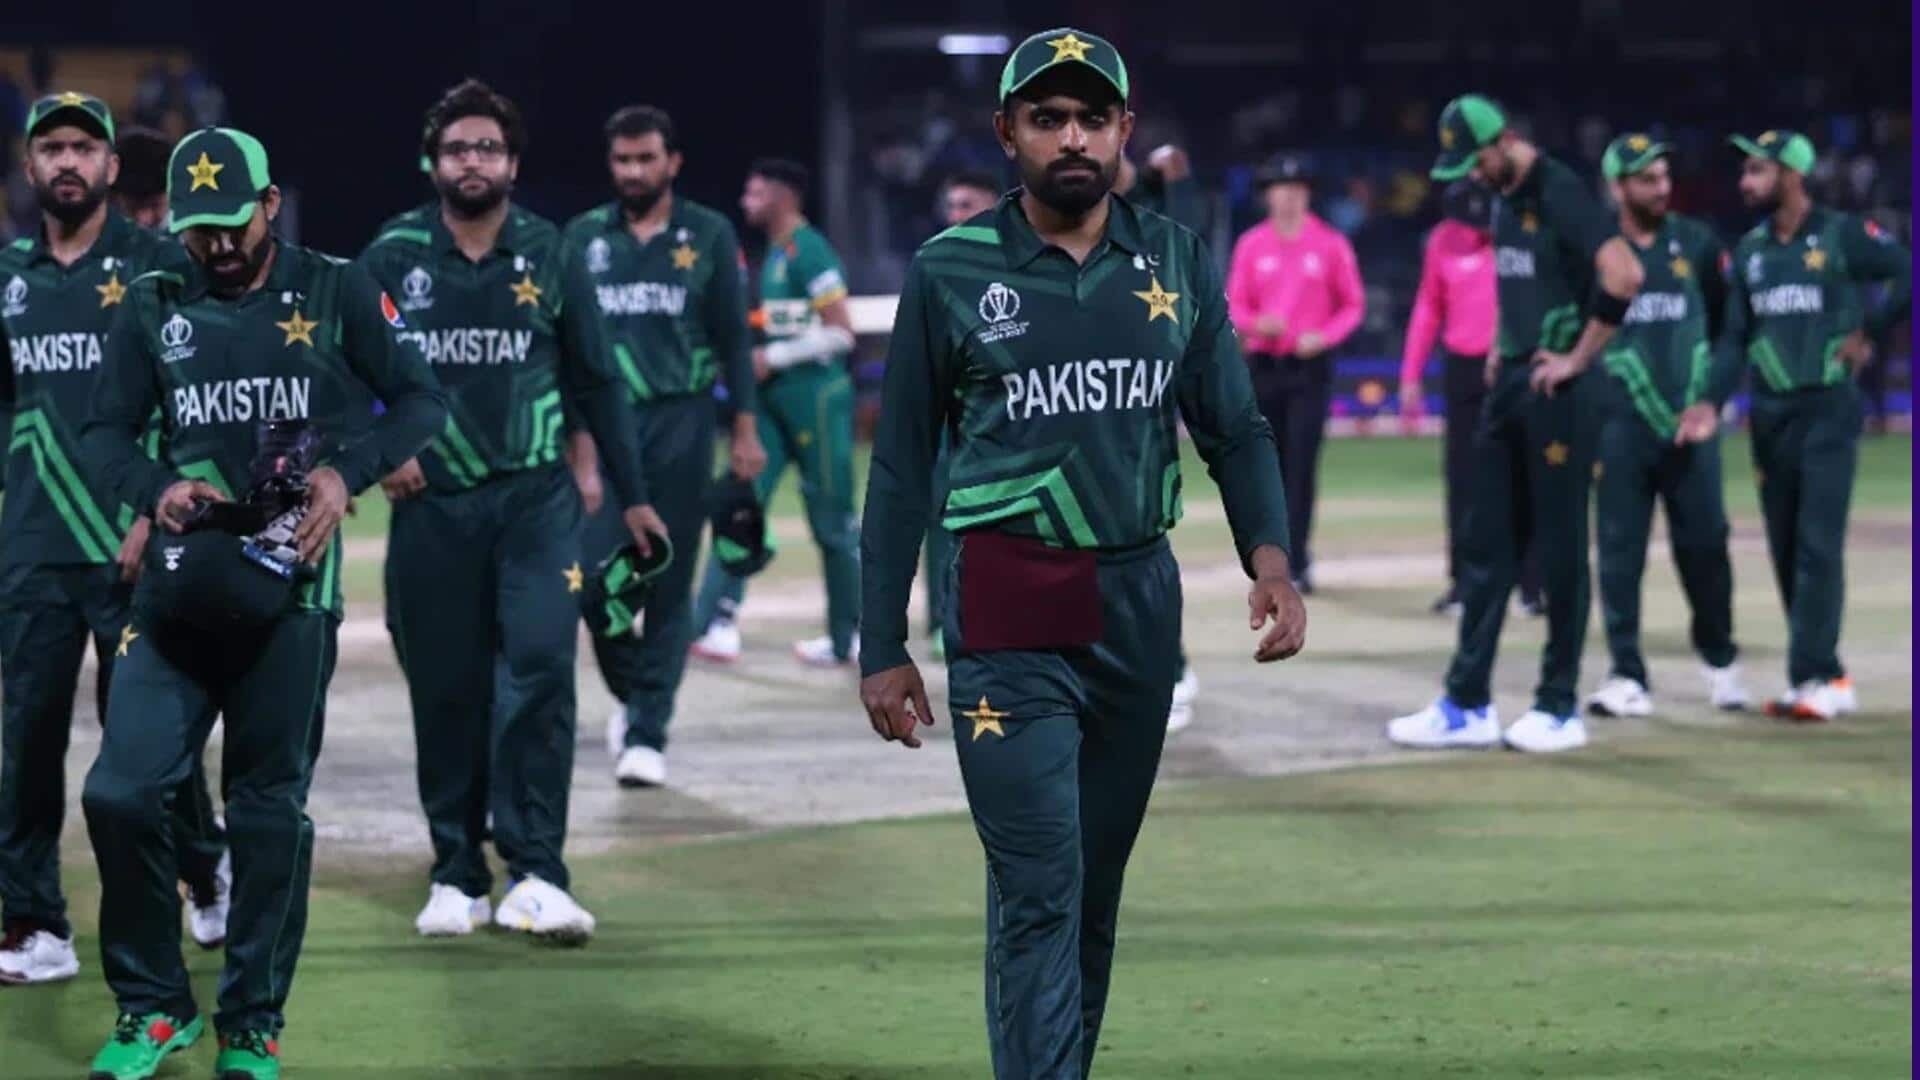 दक्षिण अफ्रीका के खिलाफ हार के बाद पाकिस्तान को एक और झटका, ICC ने लगाया जुर्माना 